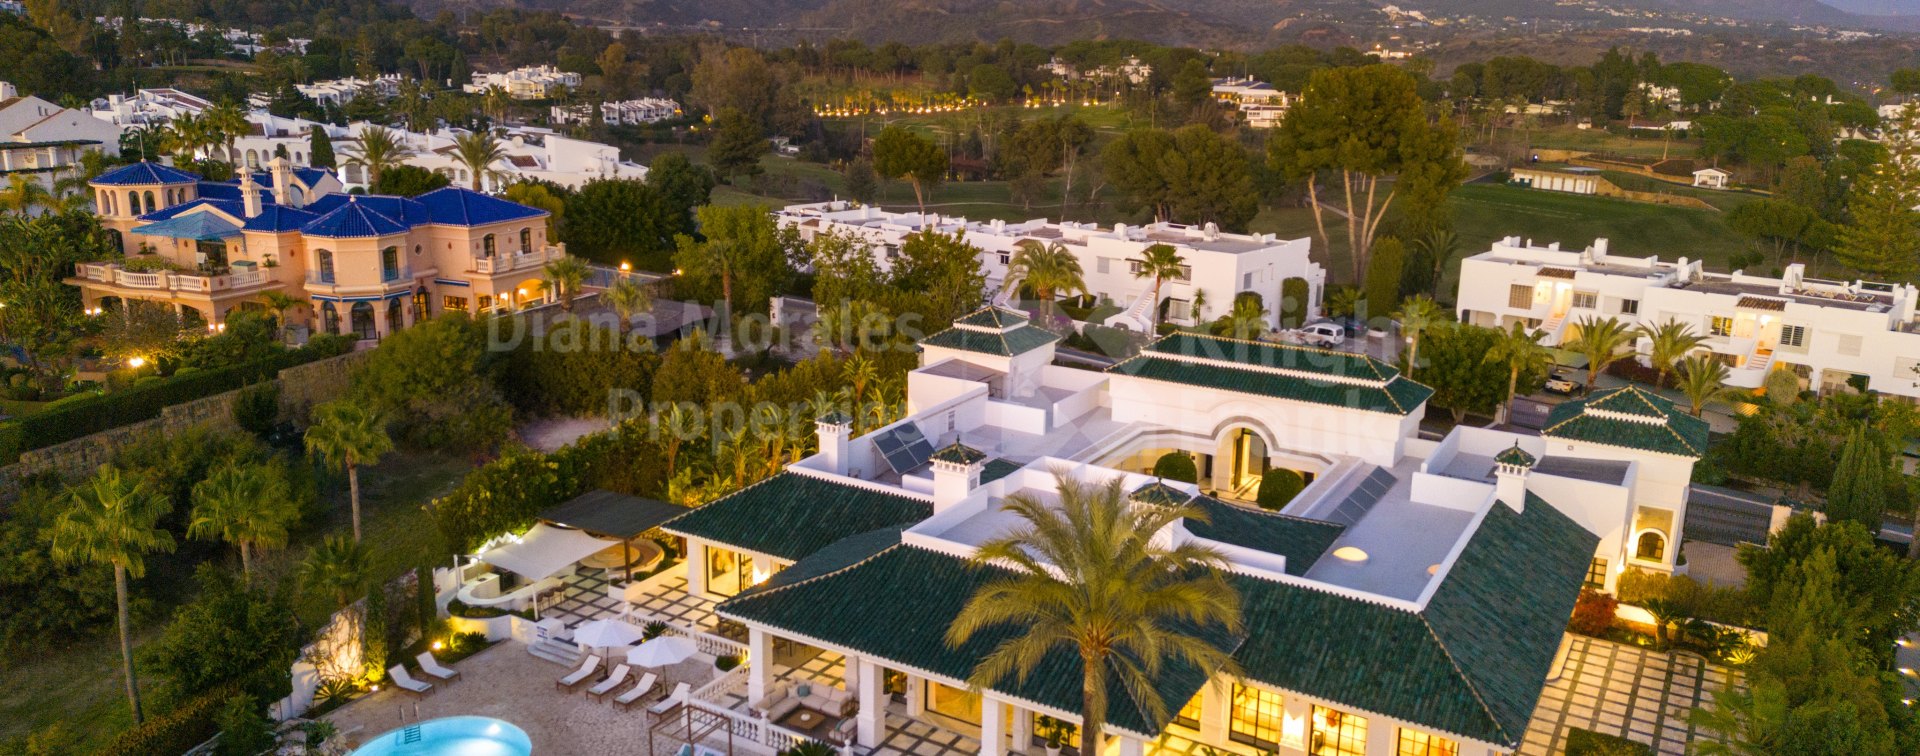 Aloha, Alhambra Palace, роскошь и изысканность в Долине гольфа